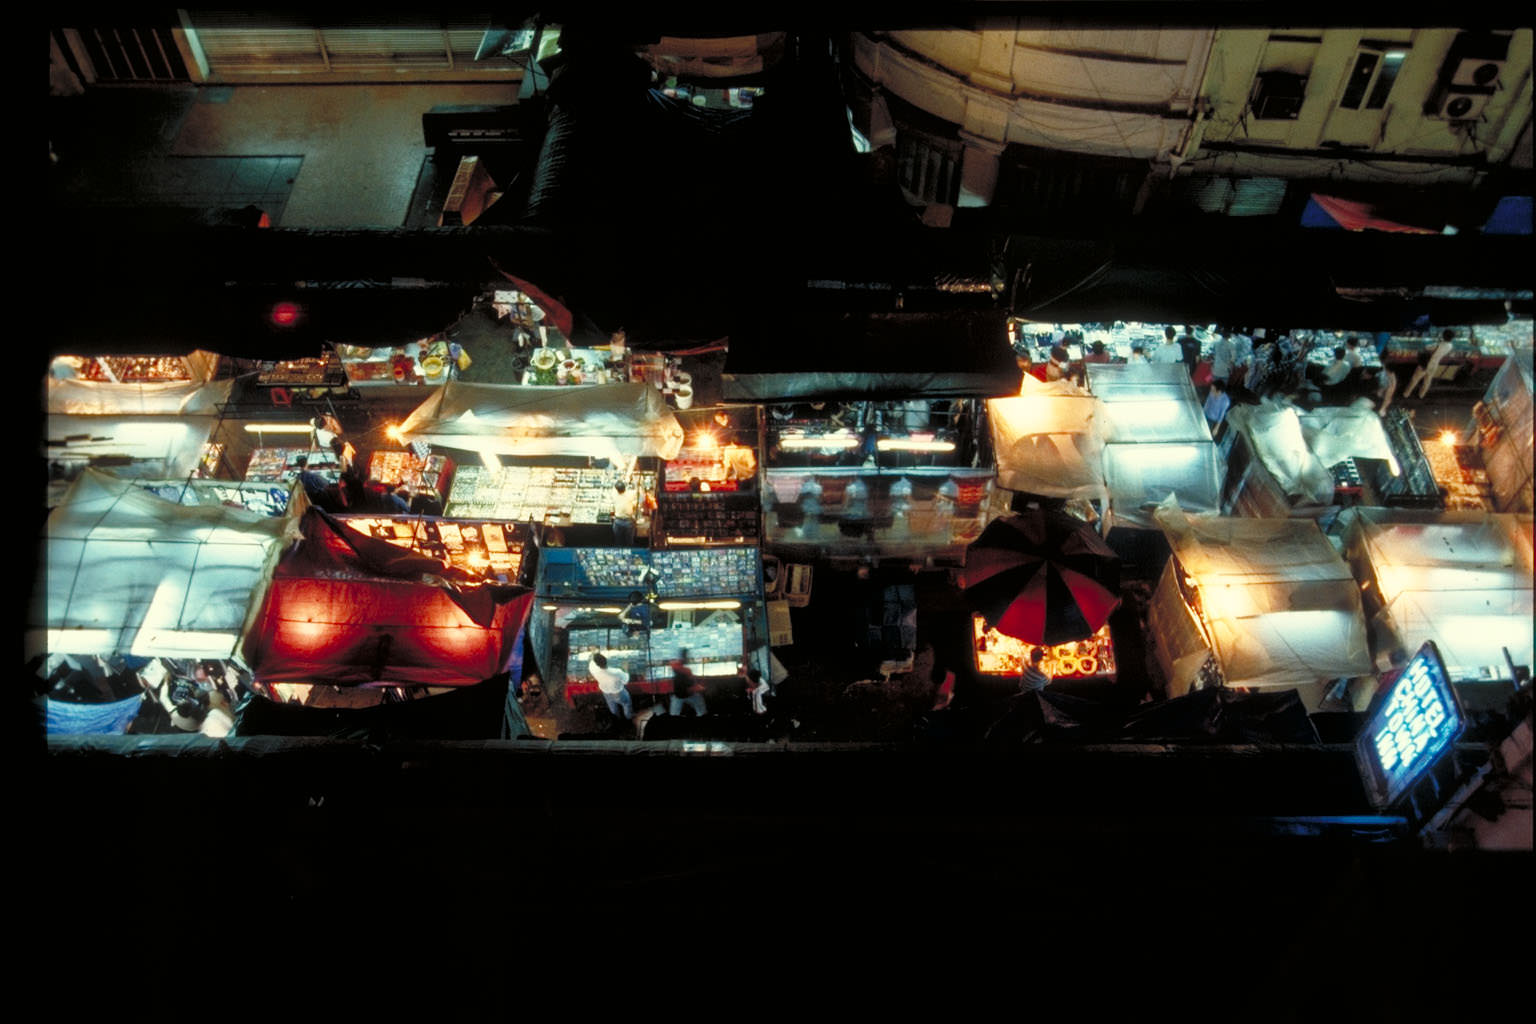  Night  Market  in KL  World Lighting Journey  